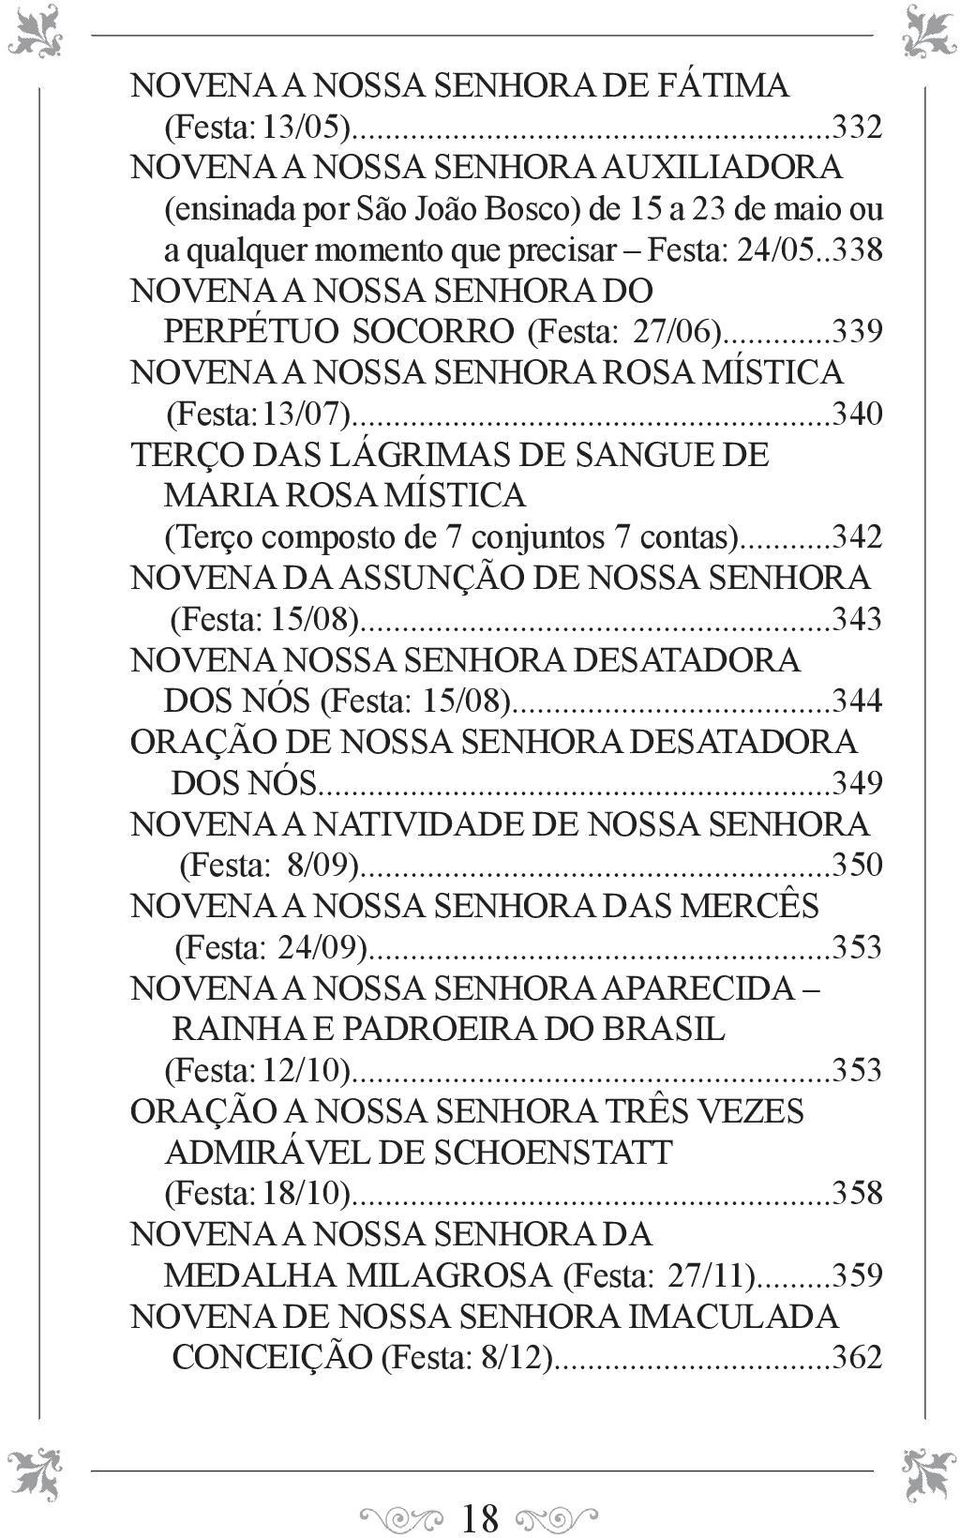 ..340 TERÇO DAS LÁGRIMAS DE SANGUE DE MARIA ROSA MÍSTICA (Terço composto de 7 conjuntos 7 contas)...342 NOVENA DA ASSUNÇÃO DE NOSSA SENHORA (Festa: 15/08).